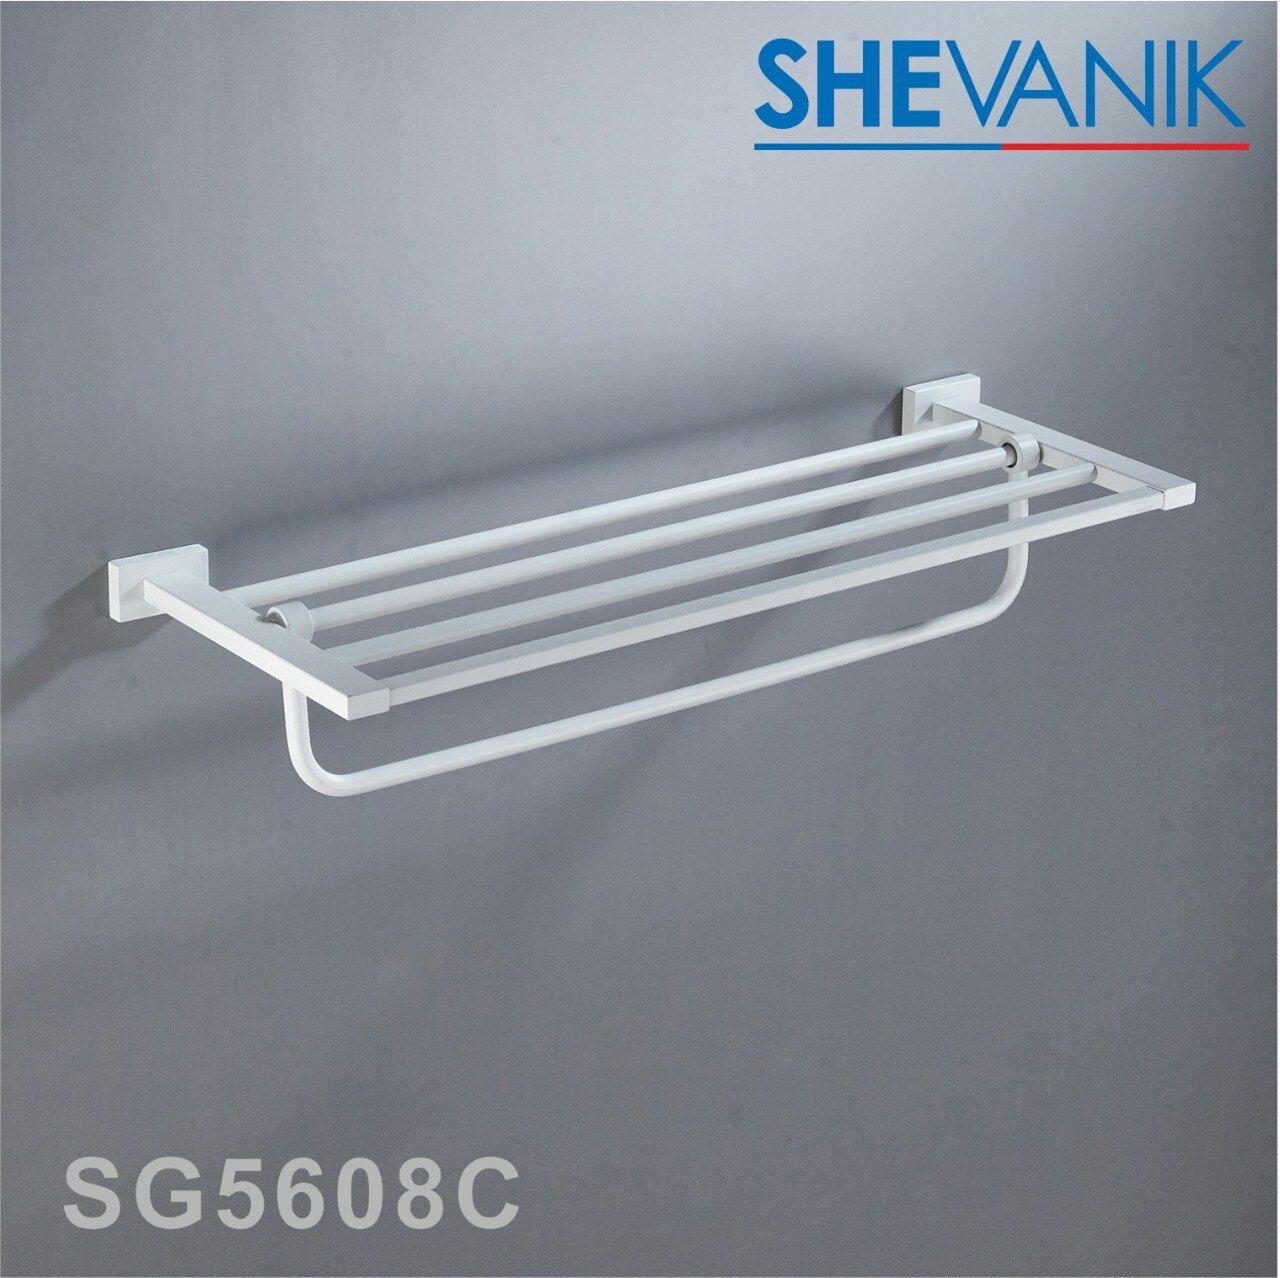 Полка для полотенец Shevanik SG5608C цвет белый